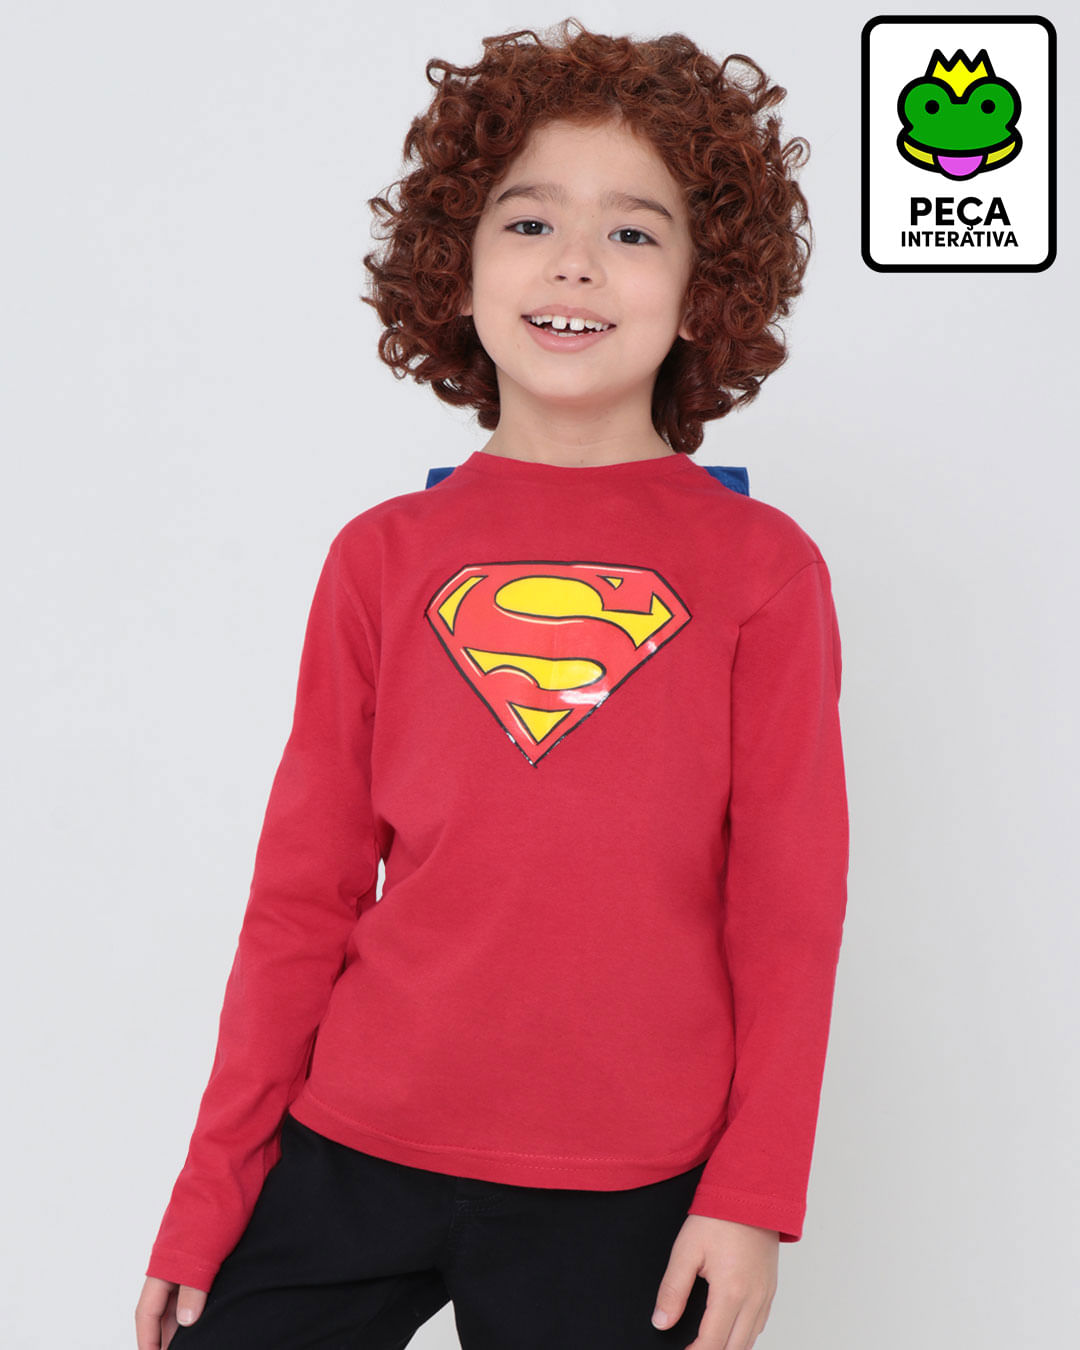 Camiseta-Infantil-Capa-Super-Homem-Liga-da-Justica-Vermelha